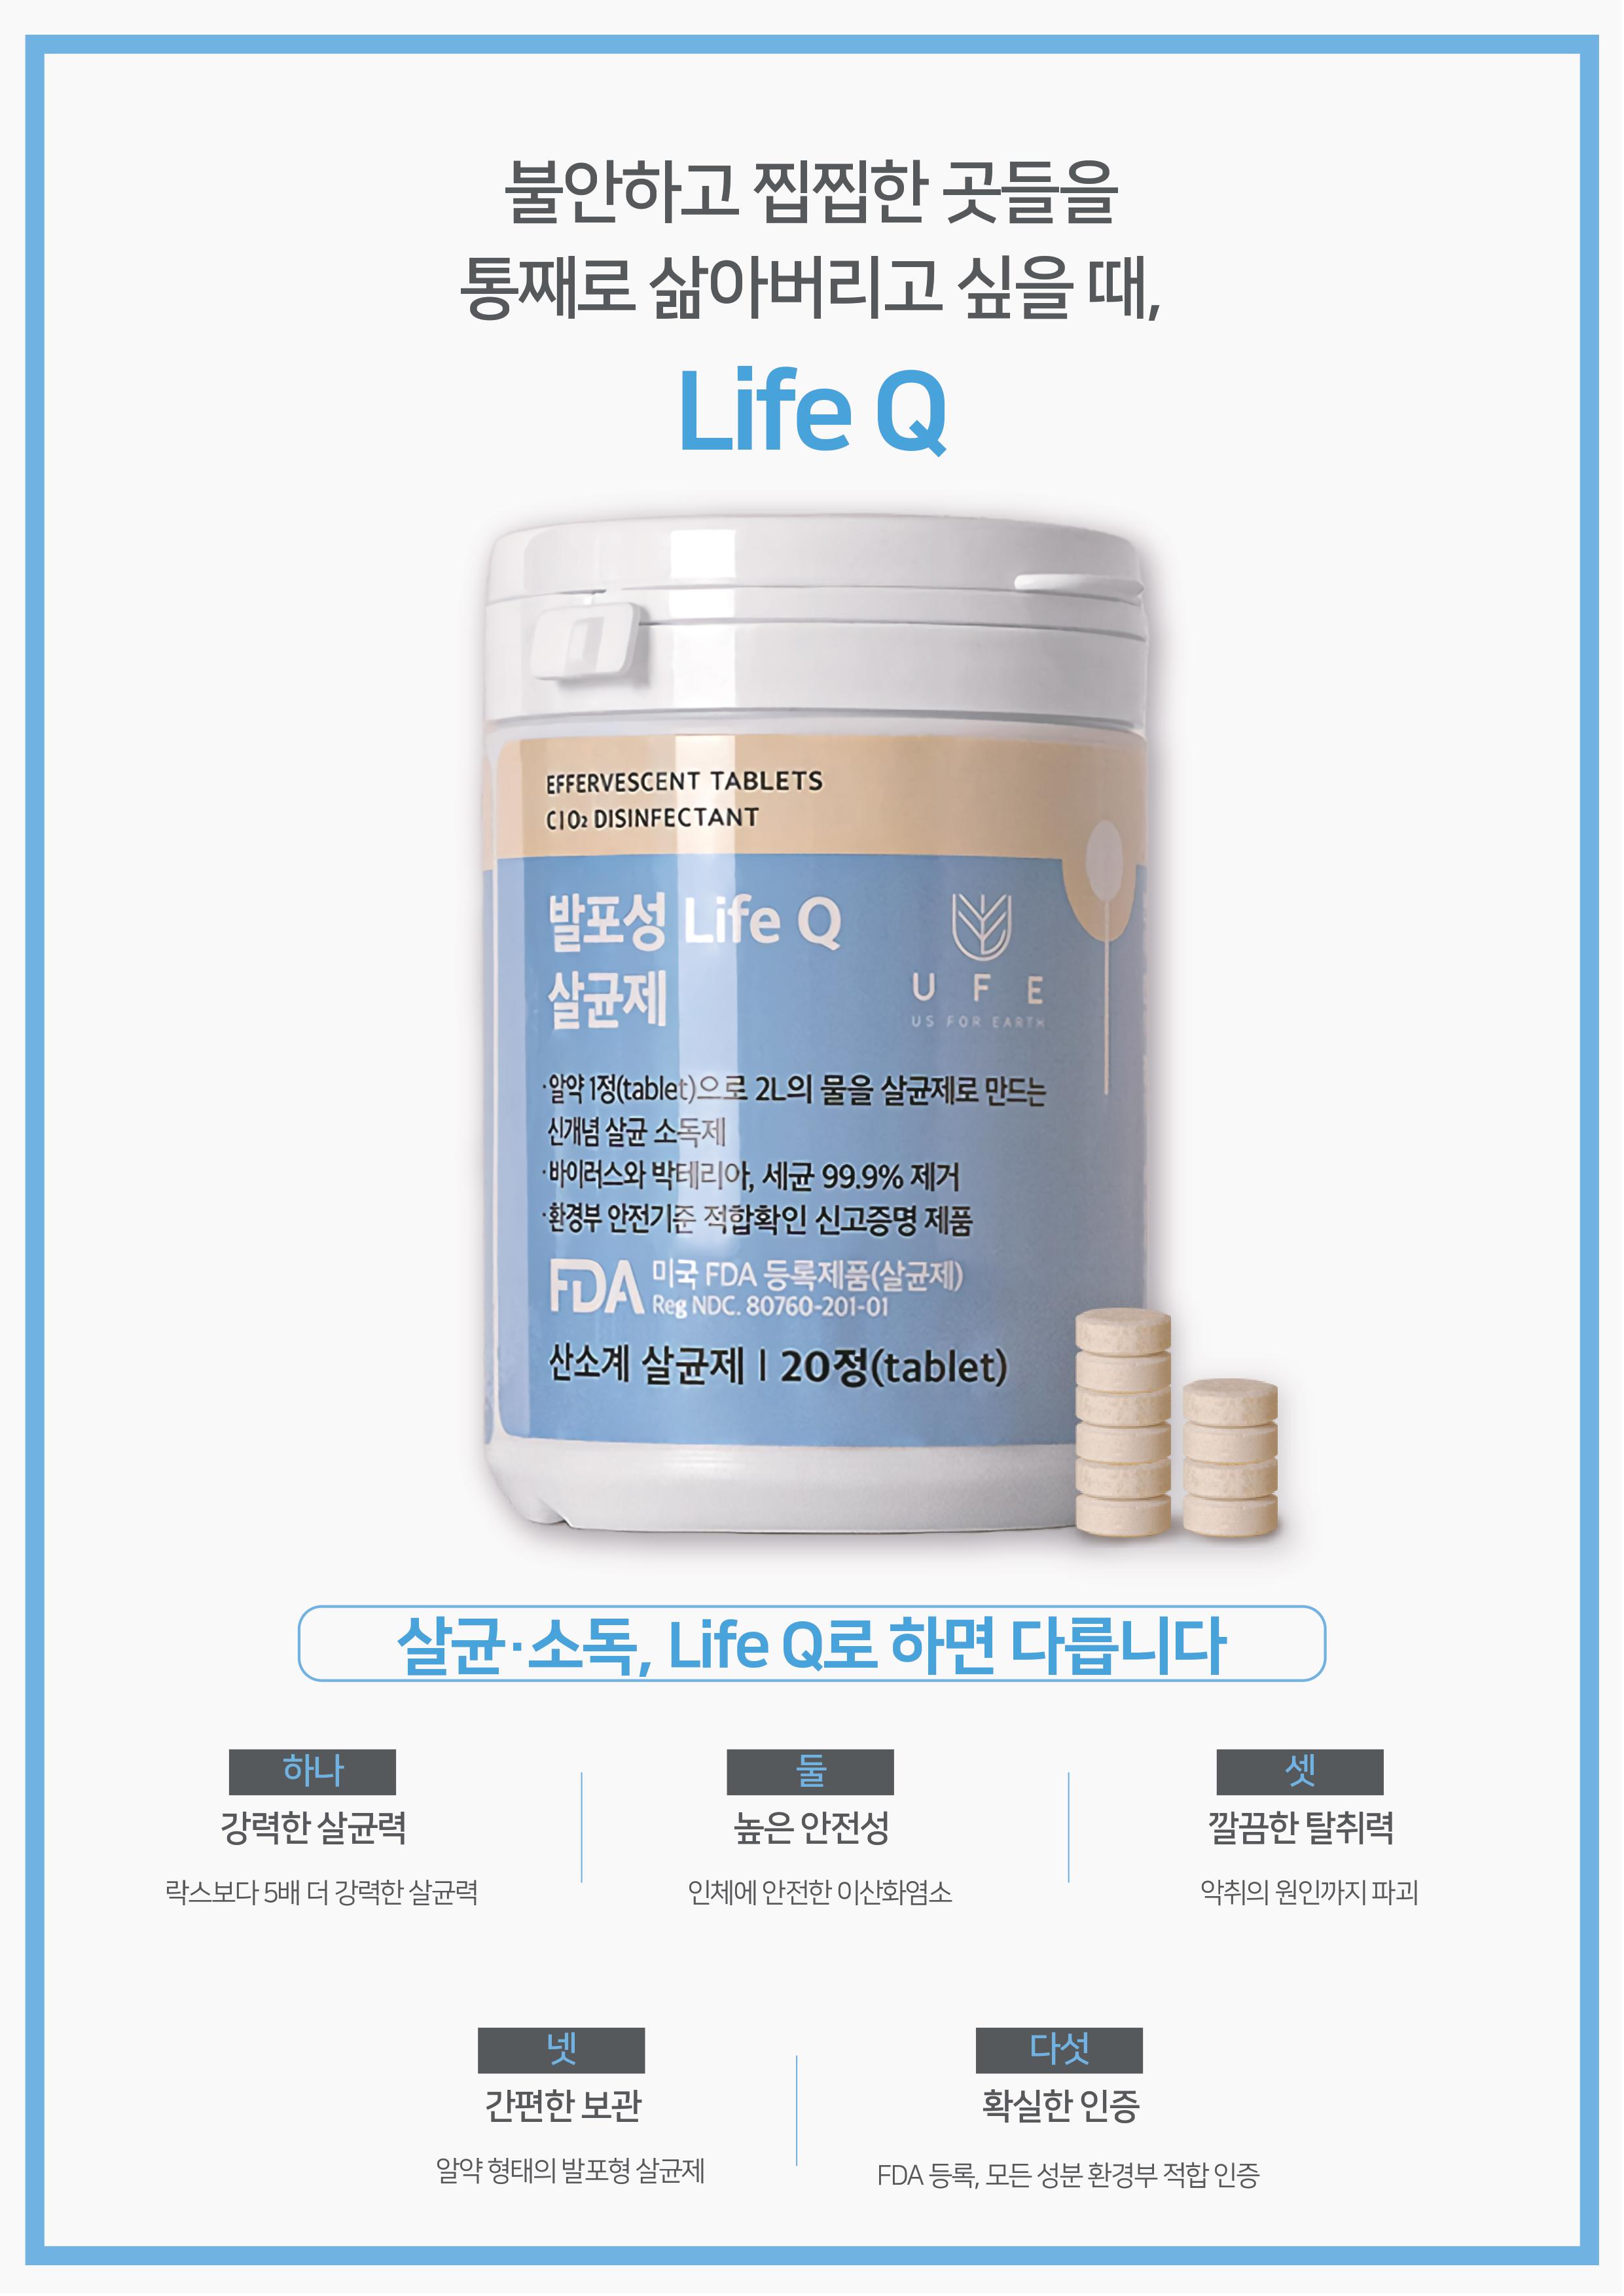 Life Q 제품 소개